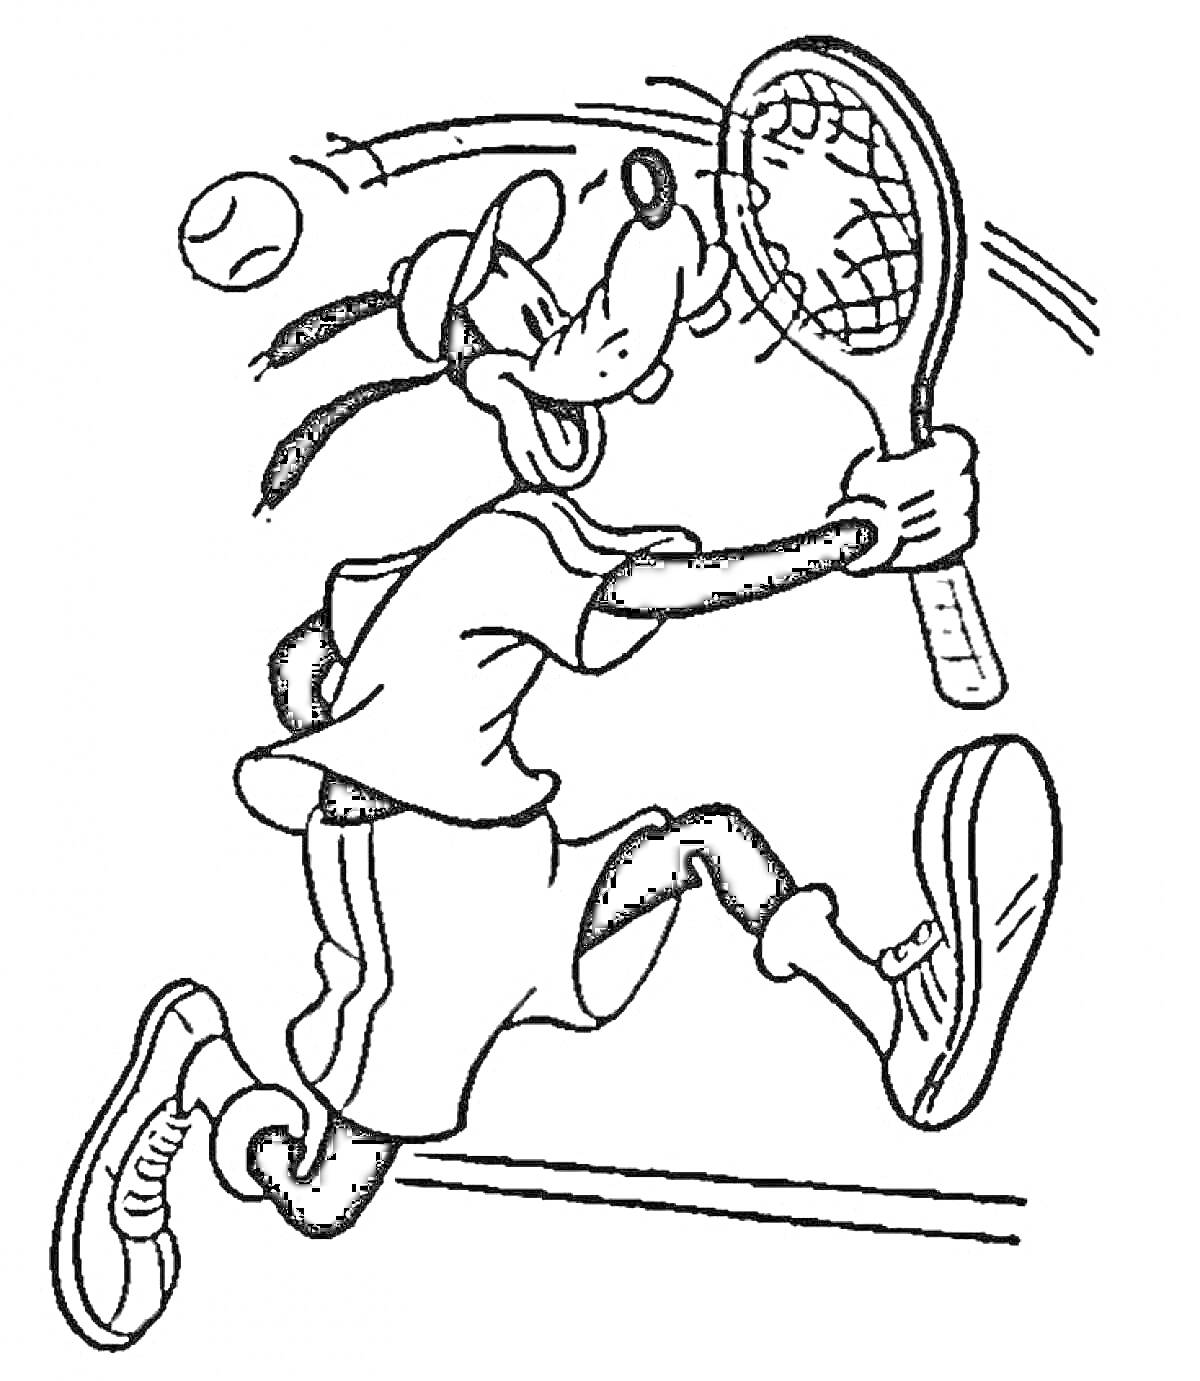 Раскраска Персонаж с длинными ушами играет в теннис, держа ракетку одной рукой, в окружении теннисного мяча